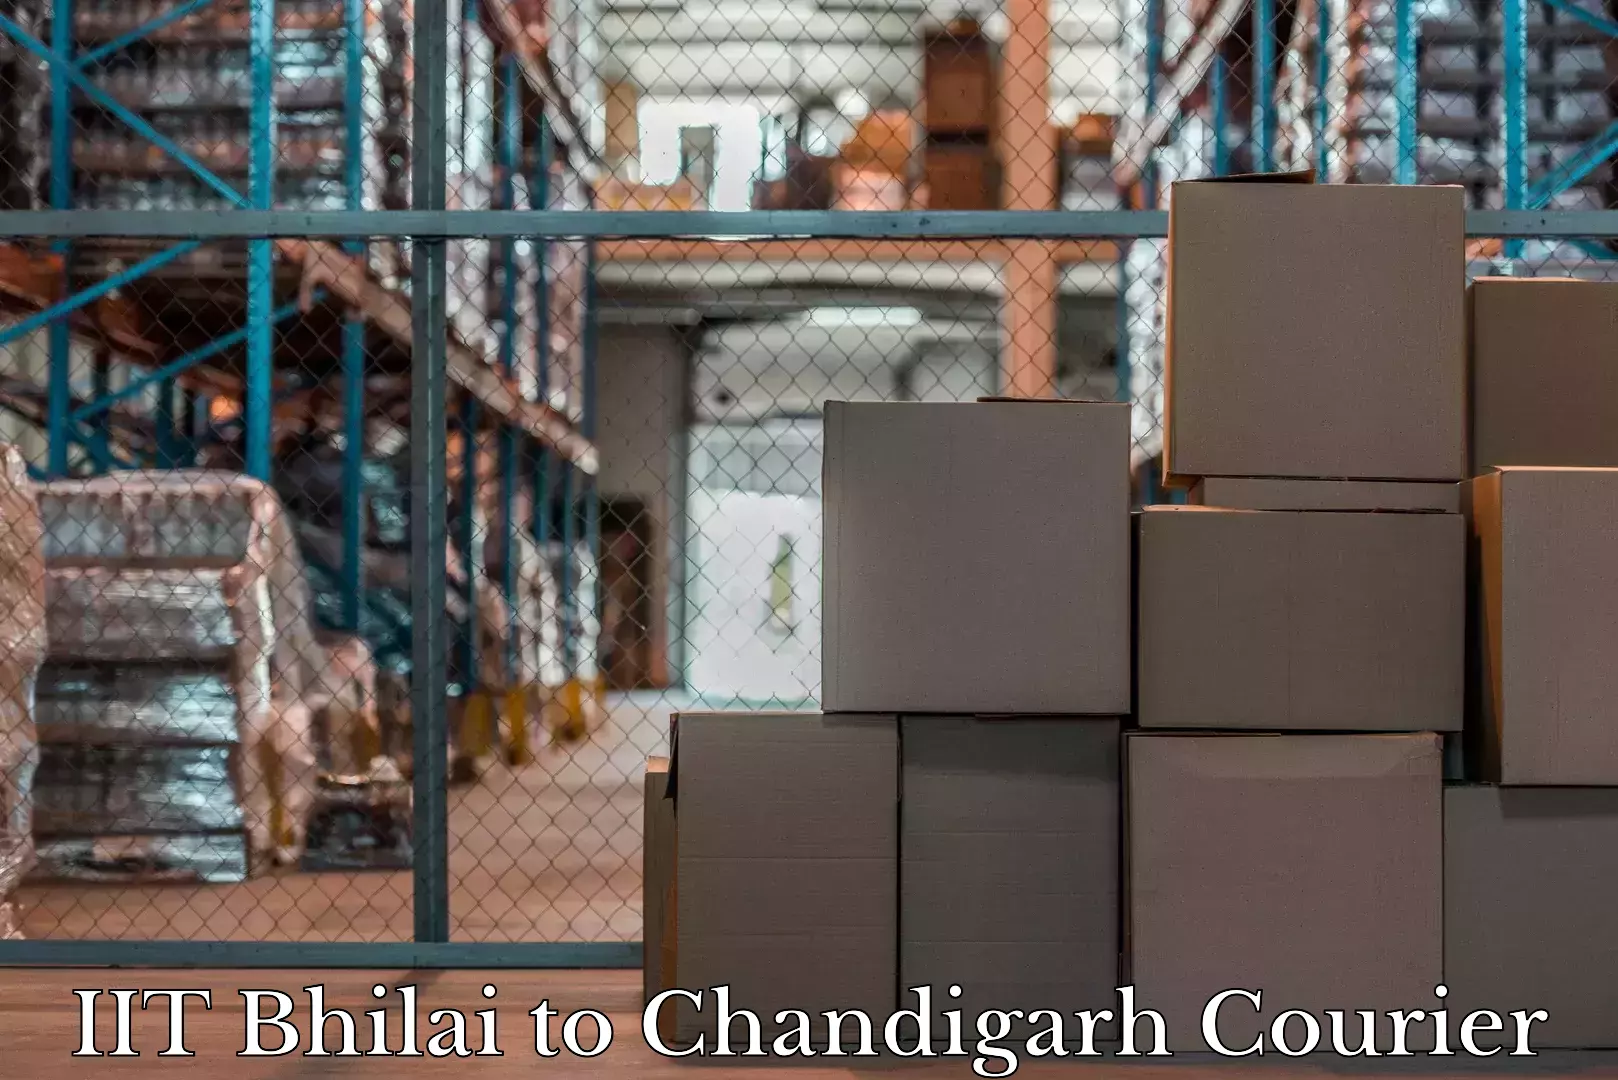 Luggage shipment tracking IIT Bhilai to Chandigarh